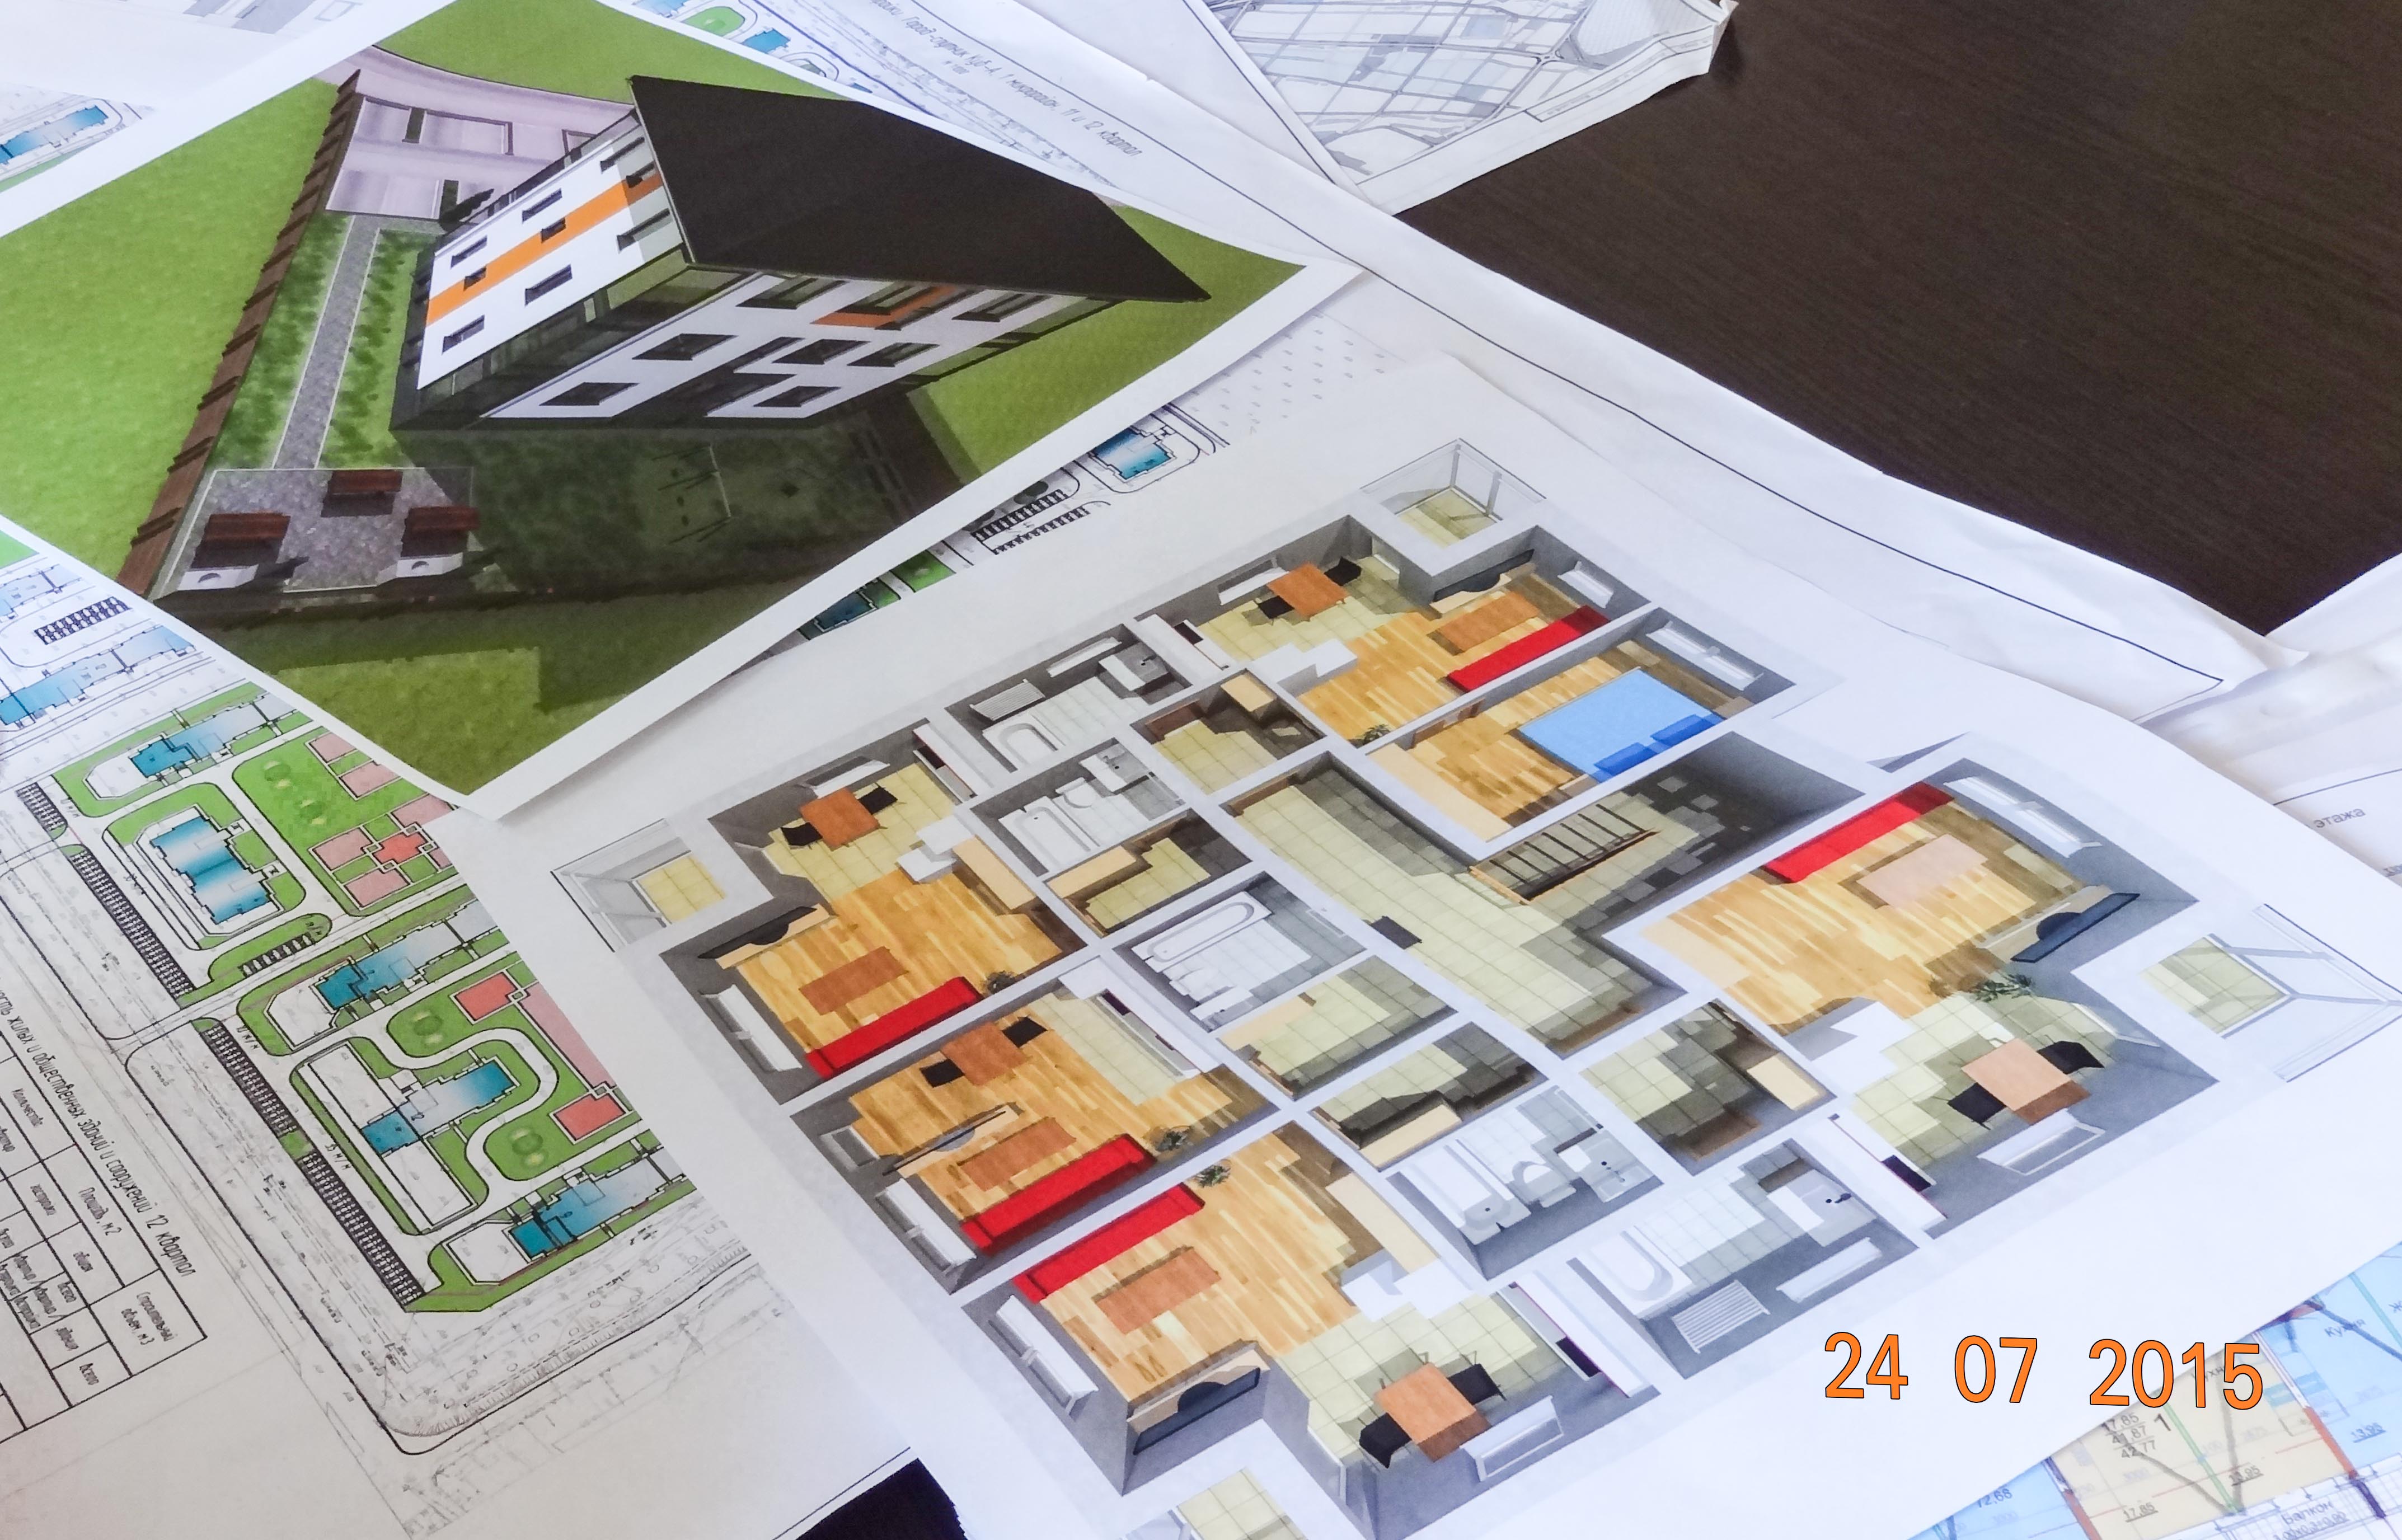 Будут построены 3-5этажные дома с использованием современных архитектурных решений чешских специалистов